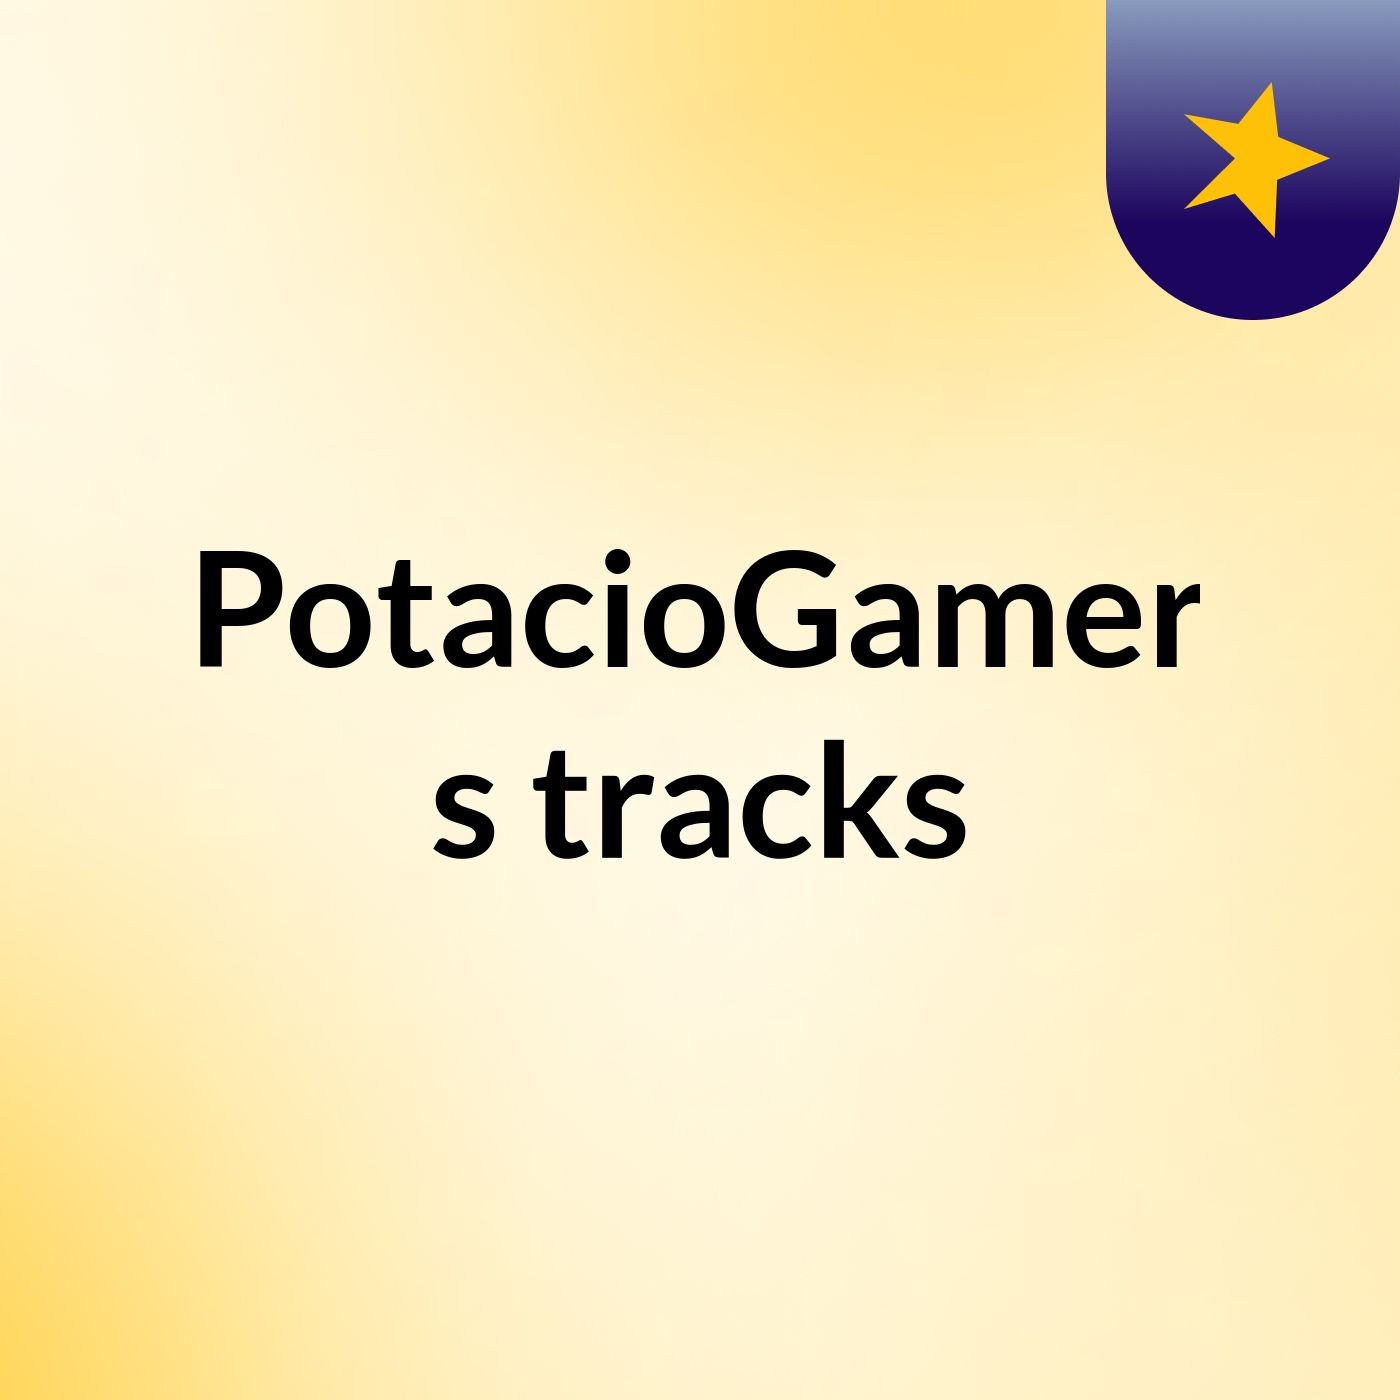 PotacioGamer's tracks